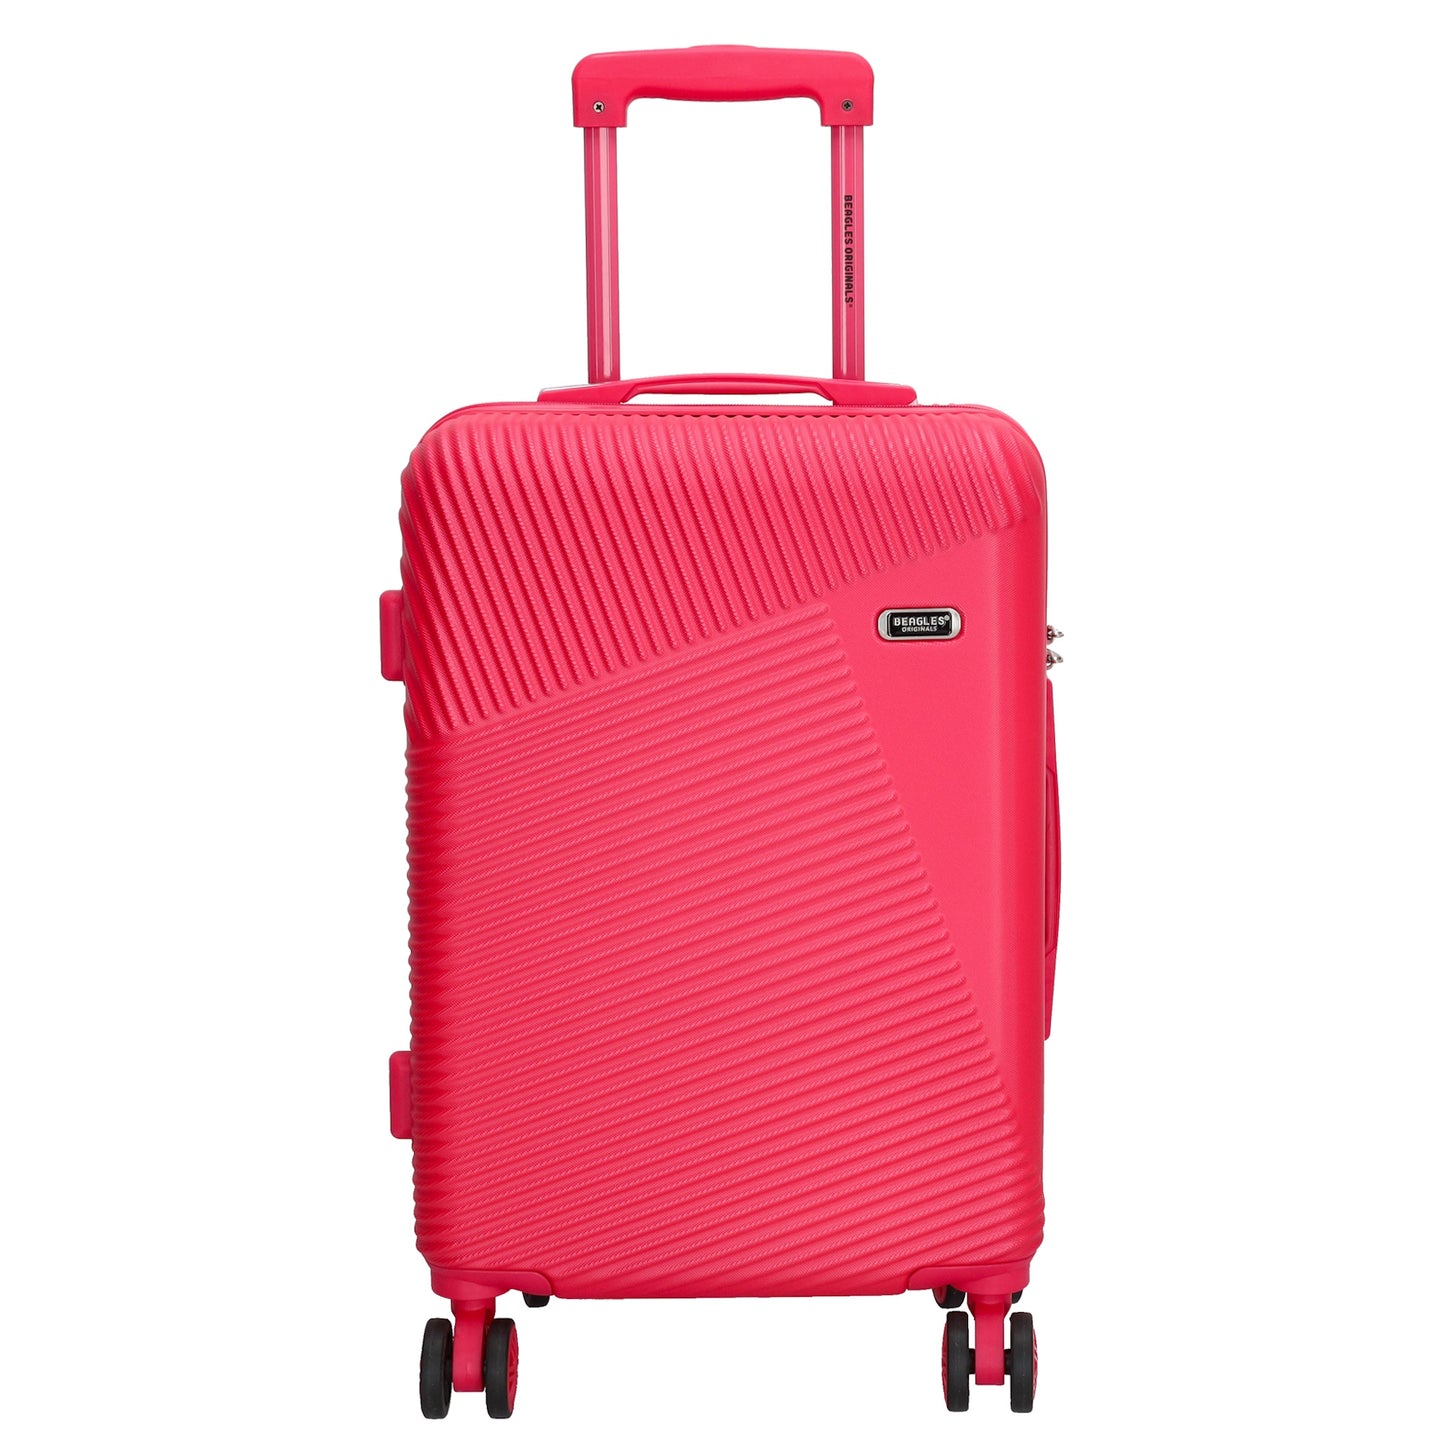 Reisetrolley|Bordgepäck 4-Rad 55cm in Pink aus ABS